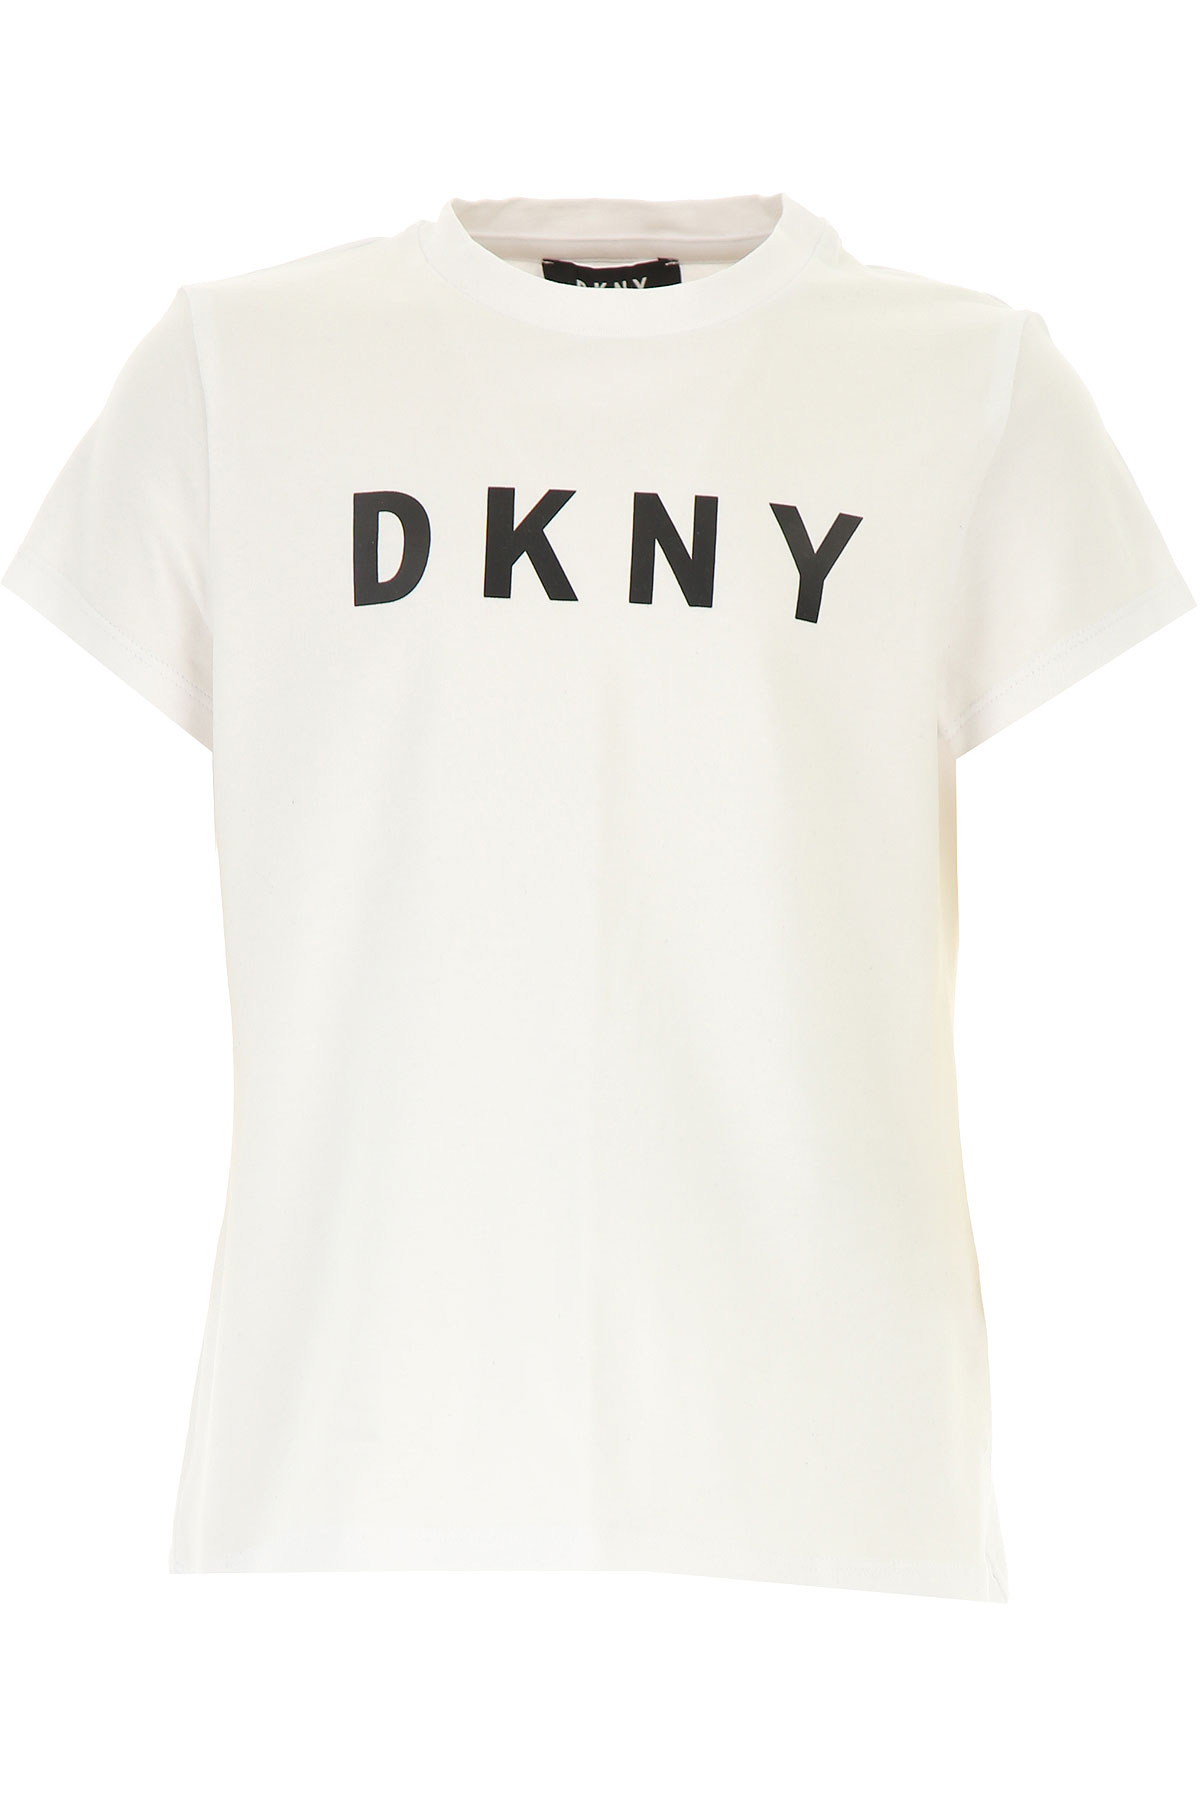 DKNY Kinder T-Shirt für Mädchen, Weiss, Baumwolle, 2017, 10Y 12Y 14Y 16Y 8Y